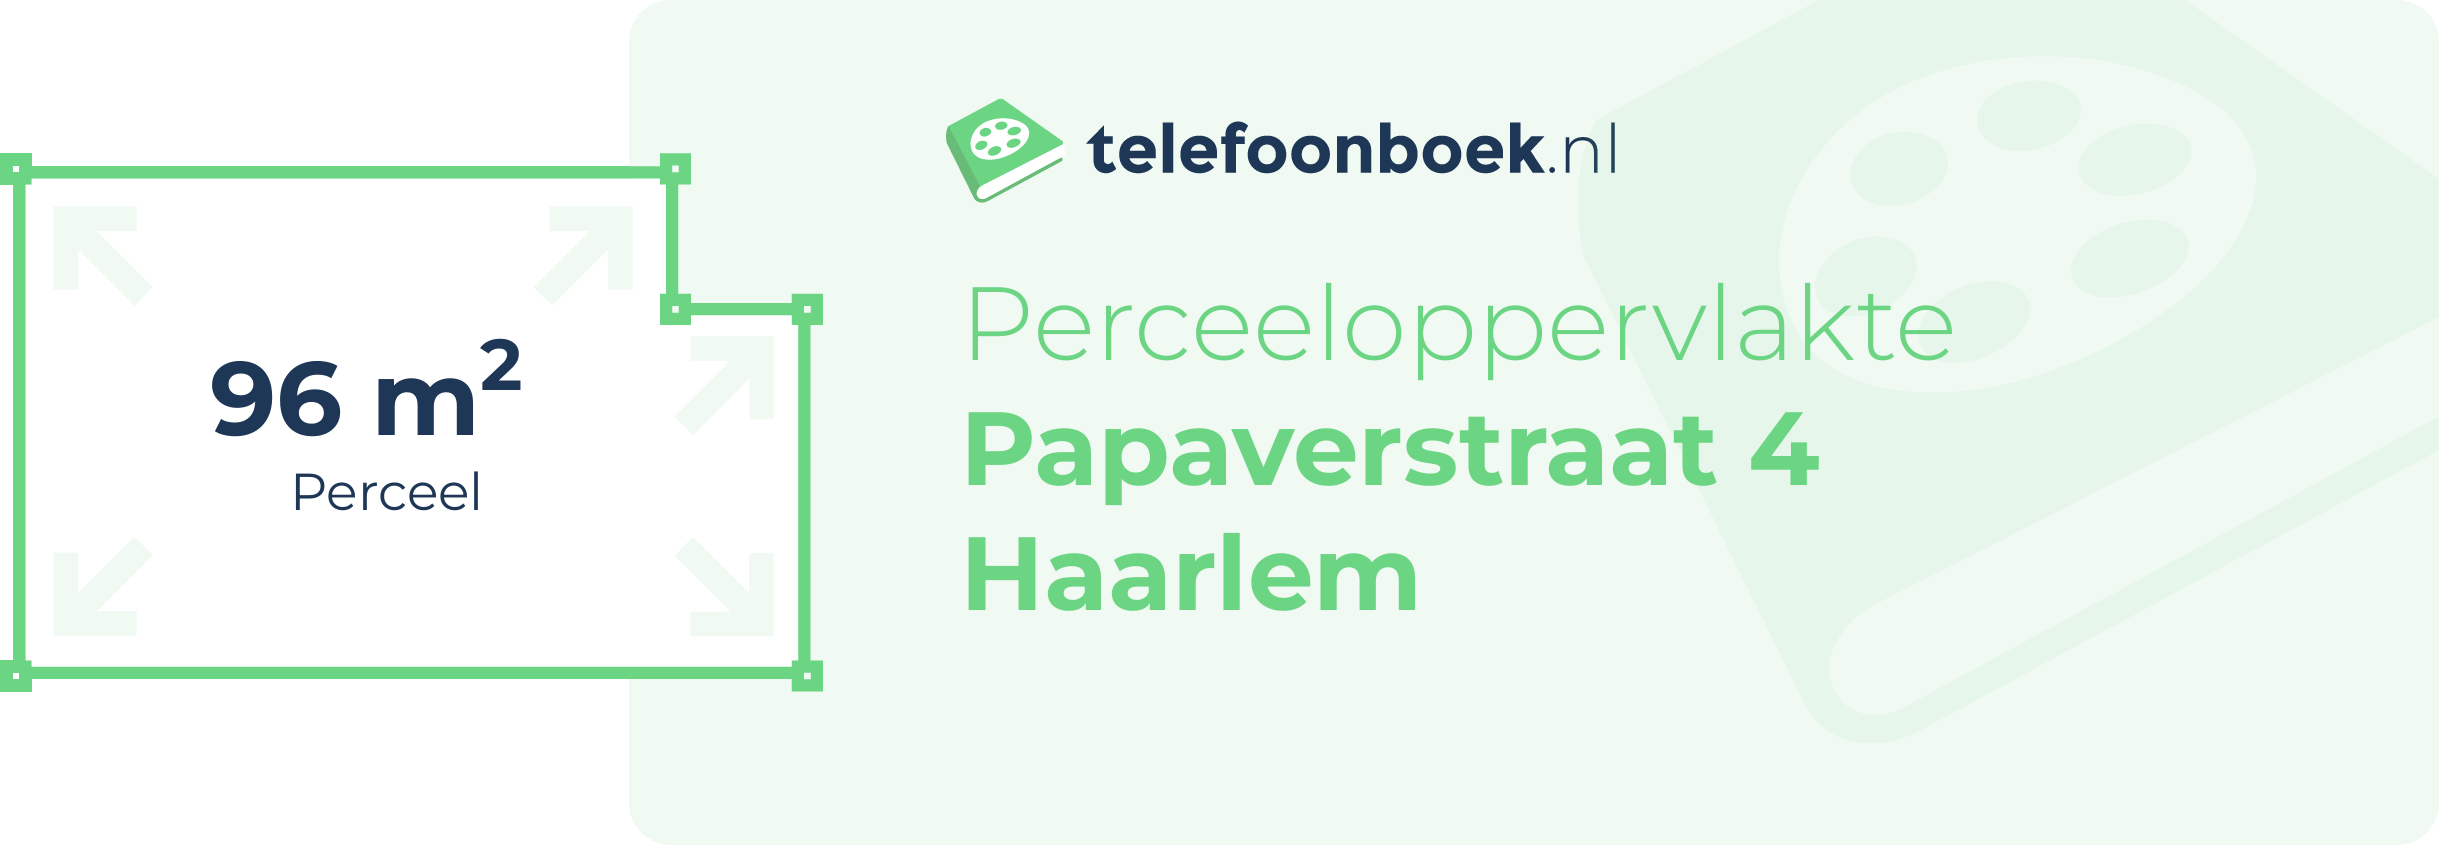 Perceeloppervlakte Papaverstraat 4 Haarlem